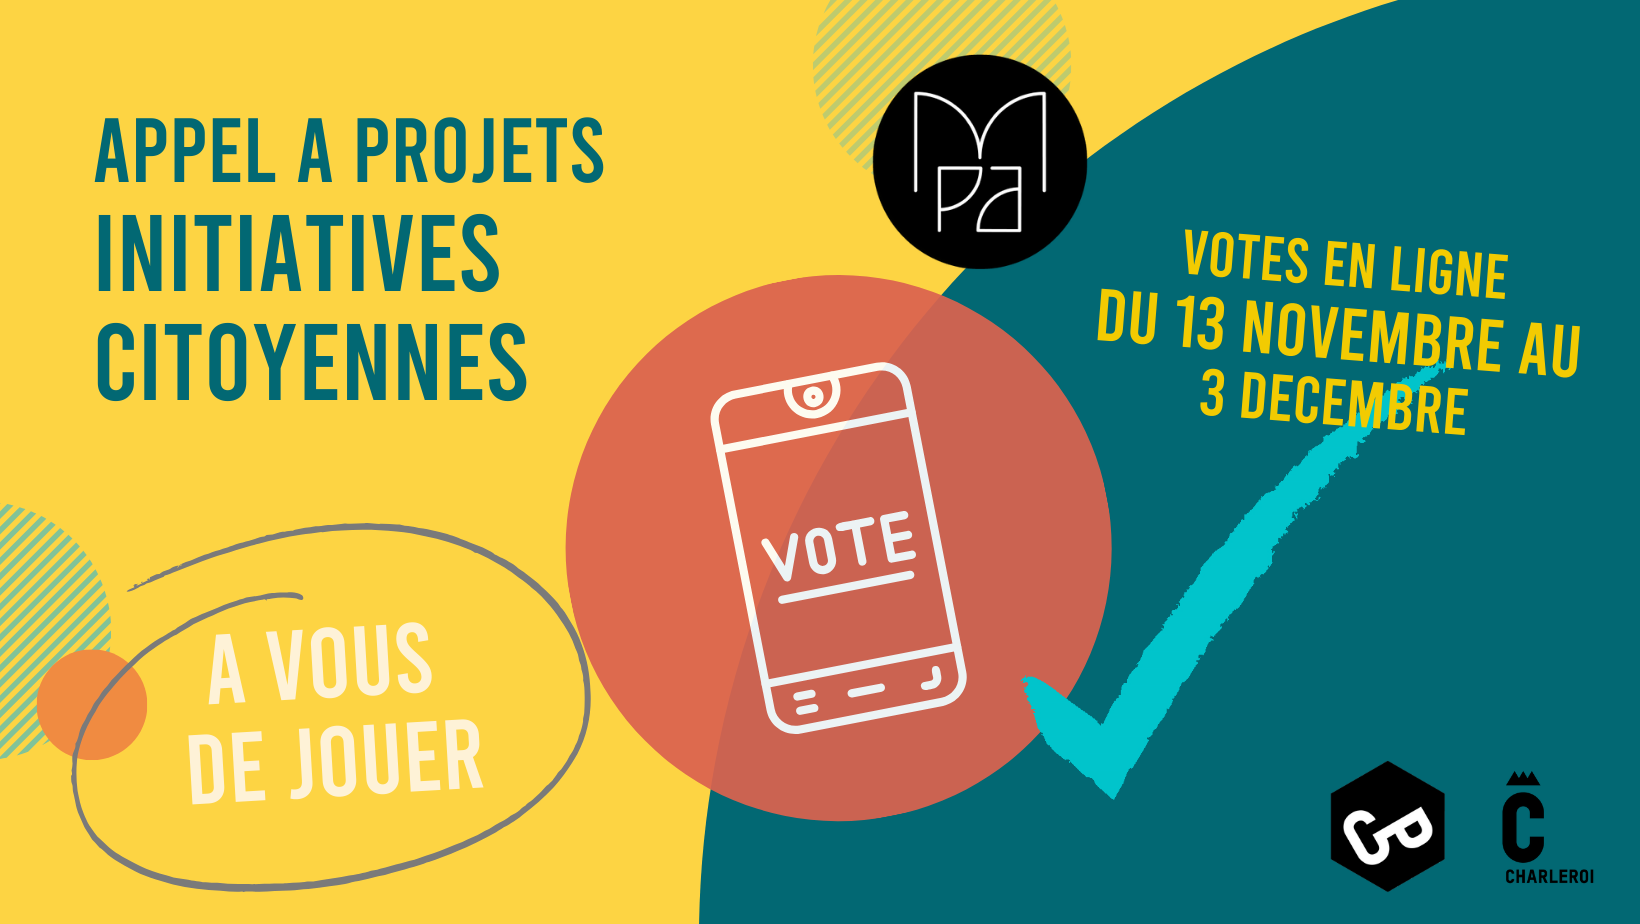 Appel à Projets Initiatives Citoyennes : C’est parti pour les votes en ligne !